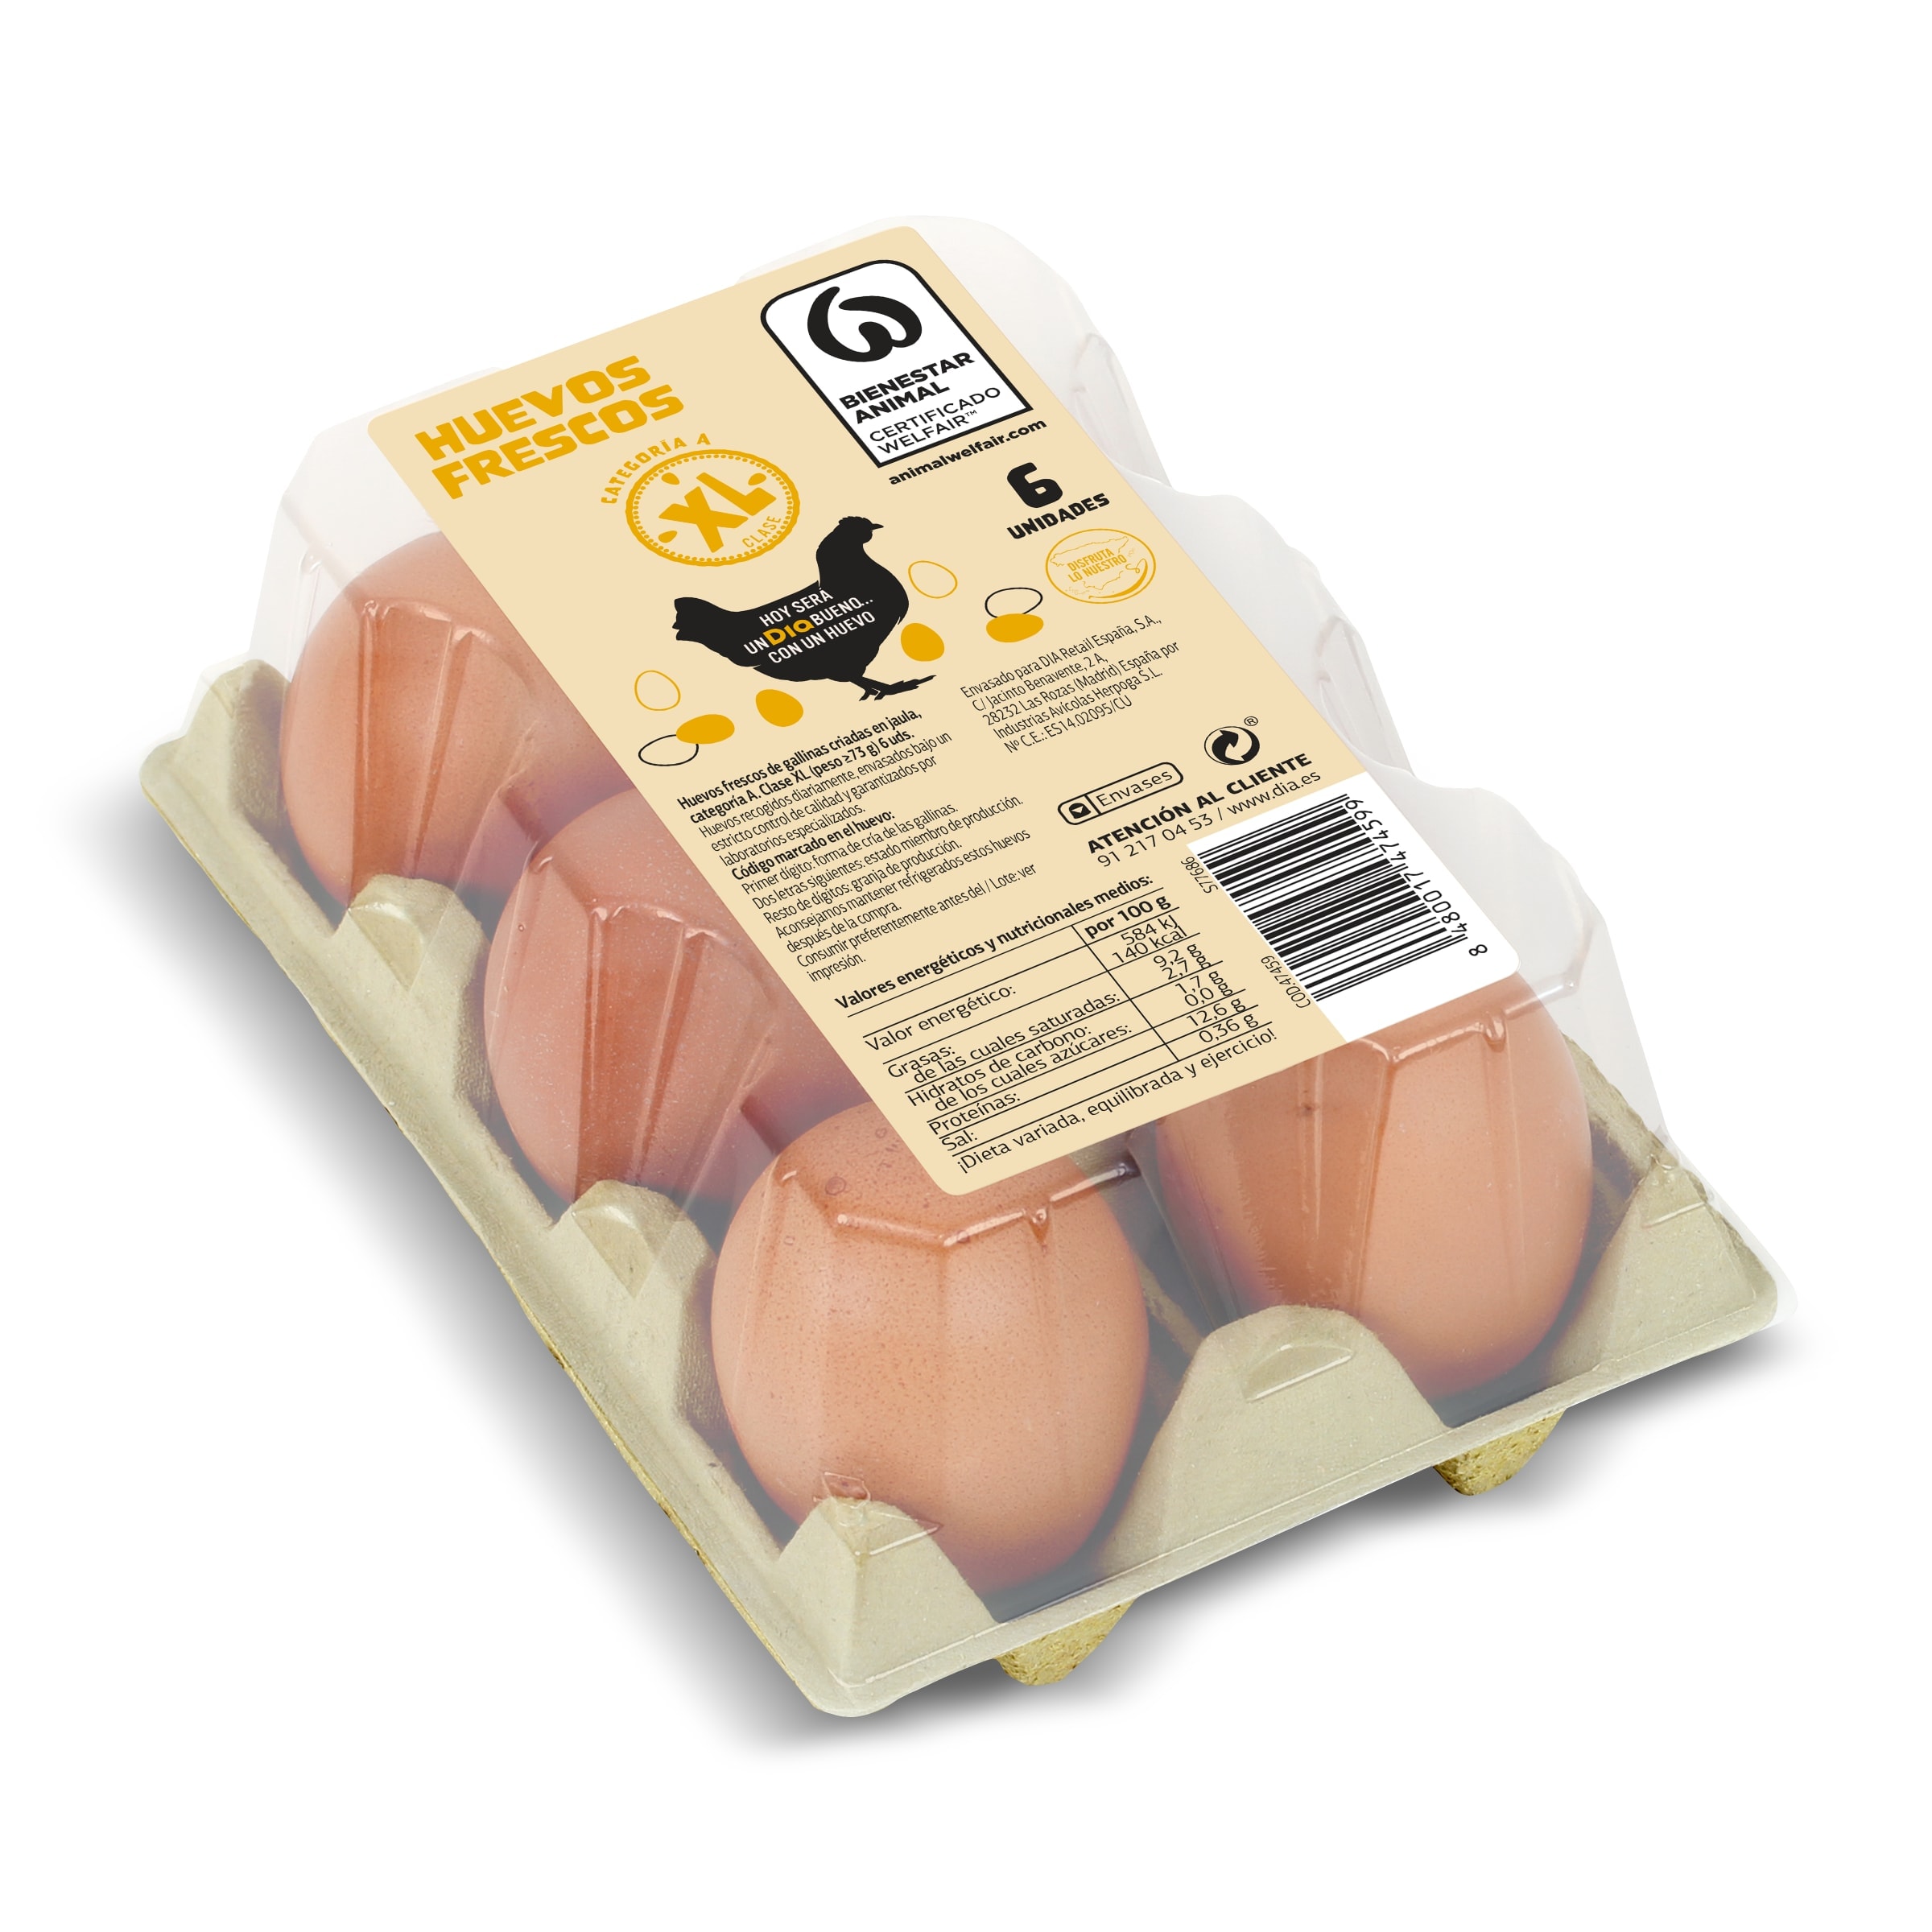 Huevos frescos categoría A clase XL Dia bandeja 6 unidades - Supermercados  DIA